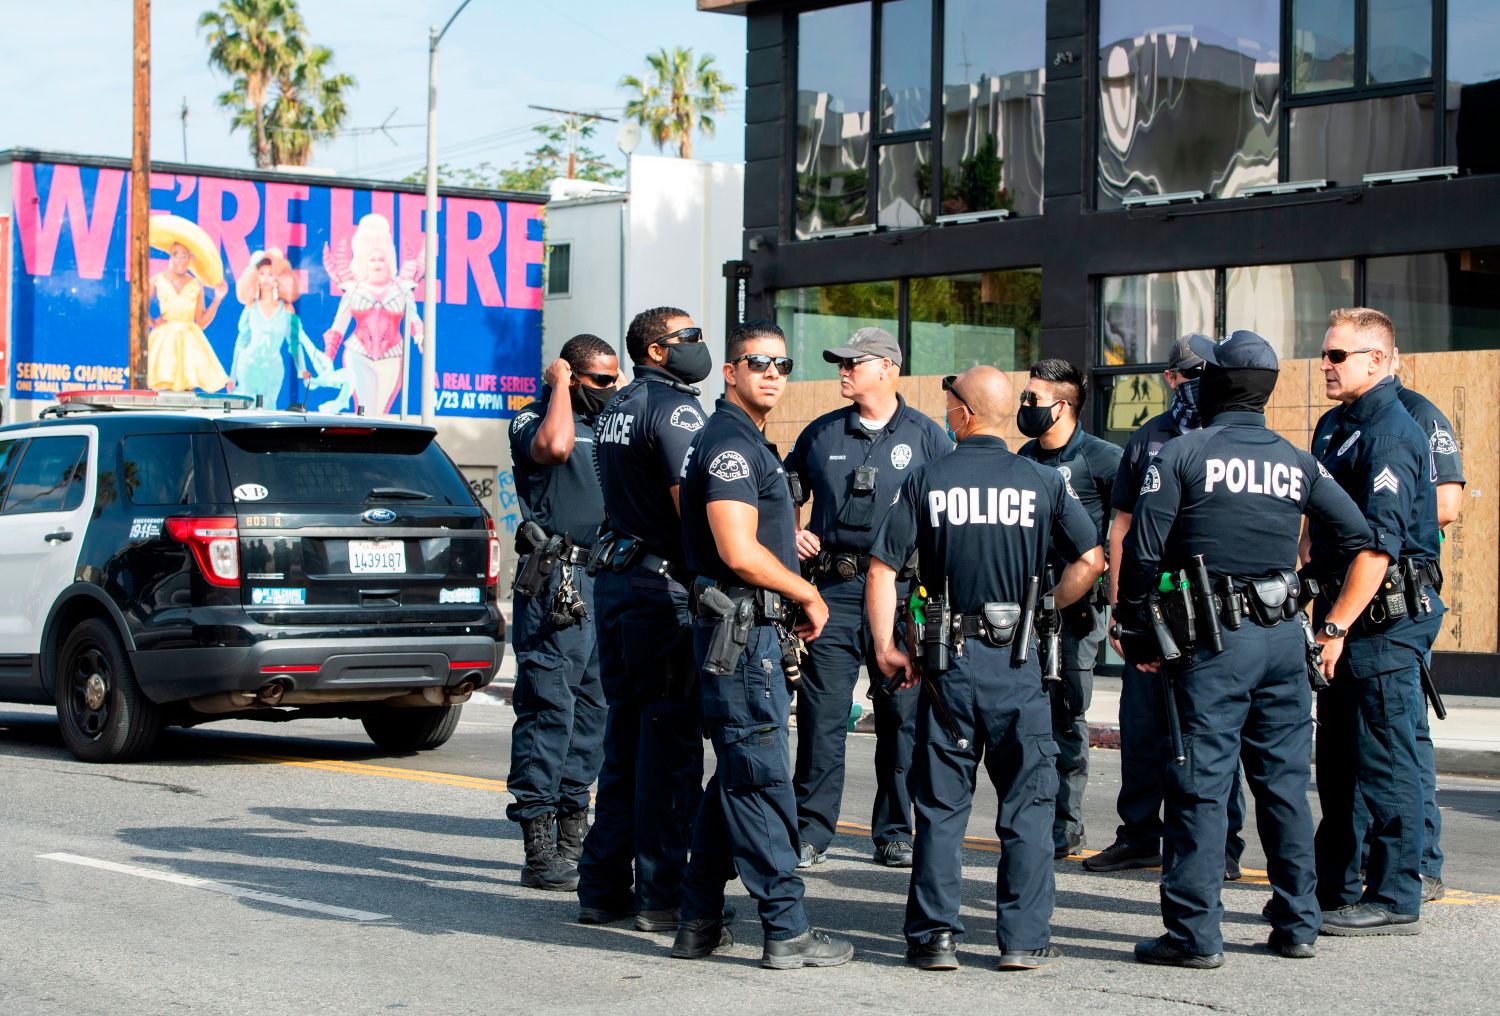 La police de Los Angeles encadre l'usage de logiciels de reconnaissance faciale à la suite de dérives